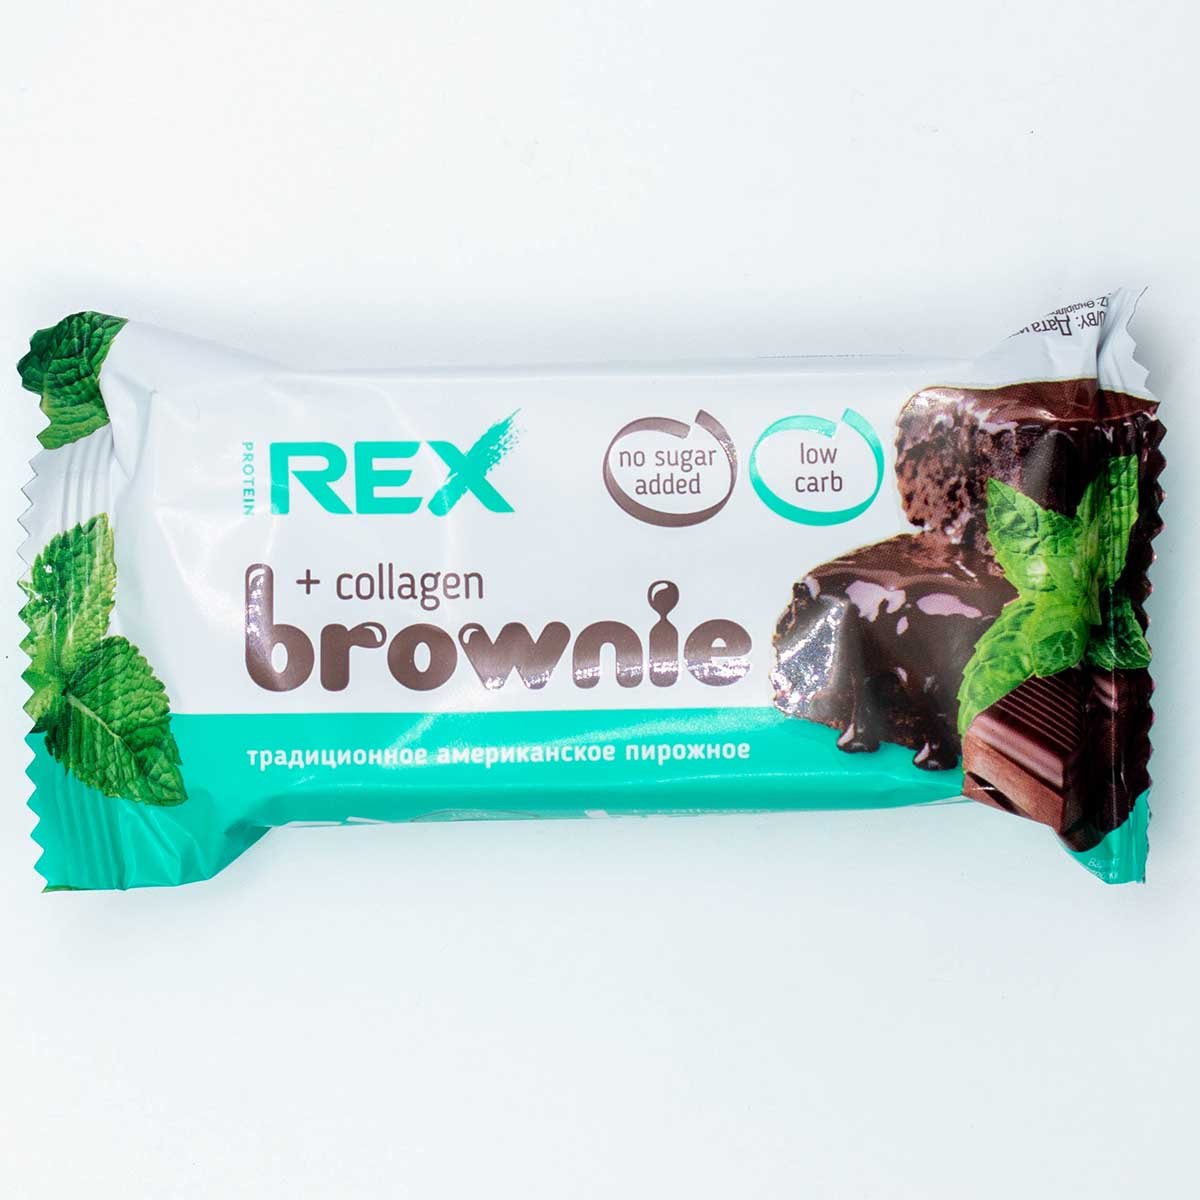 Rex пирожное протеиновое. Протеин рекс Брауни пирожное. Protein Rex вафли. Протеин Rex пирожное. Пирожное протеиновое Брауни мятное с коллагеном упаковка.